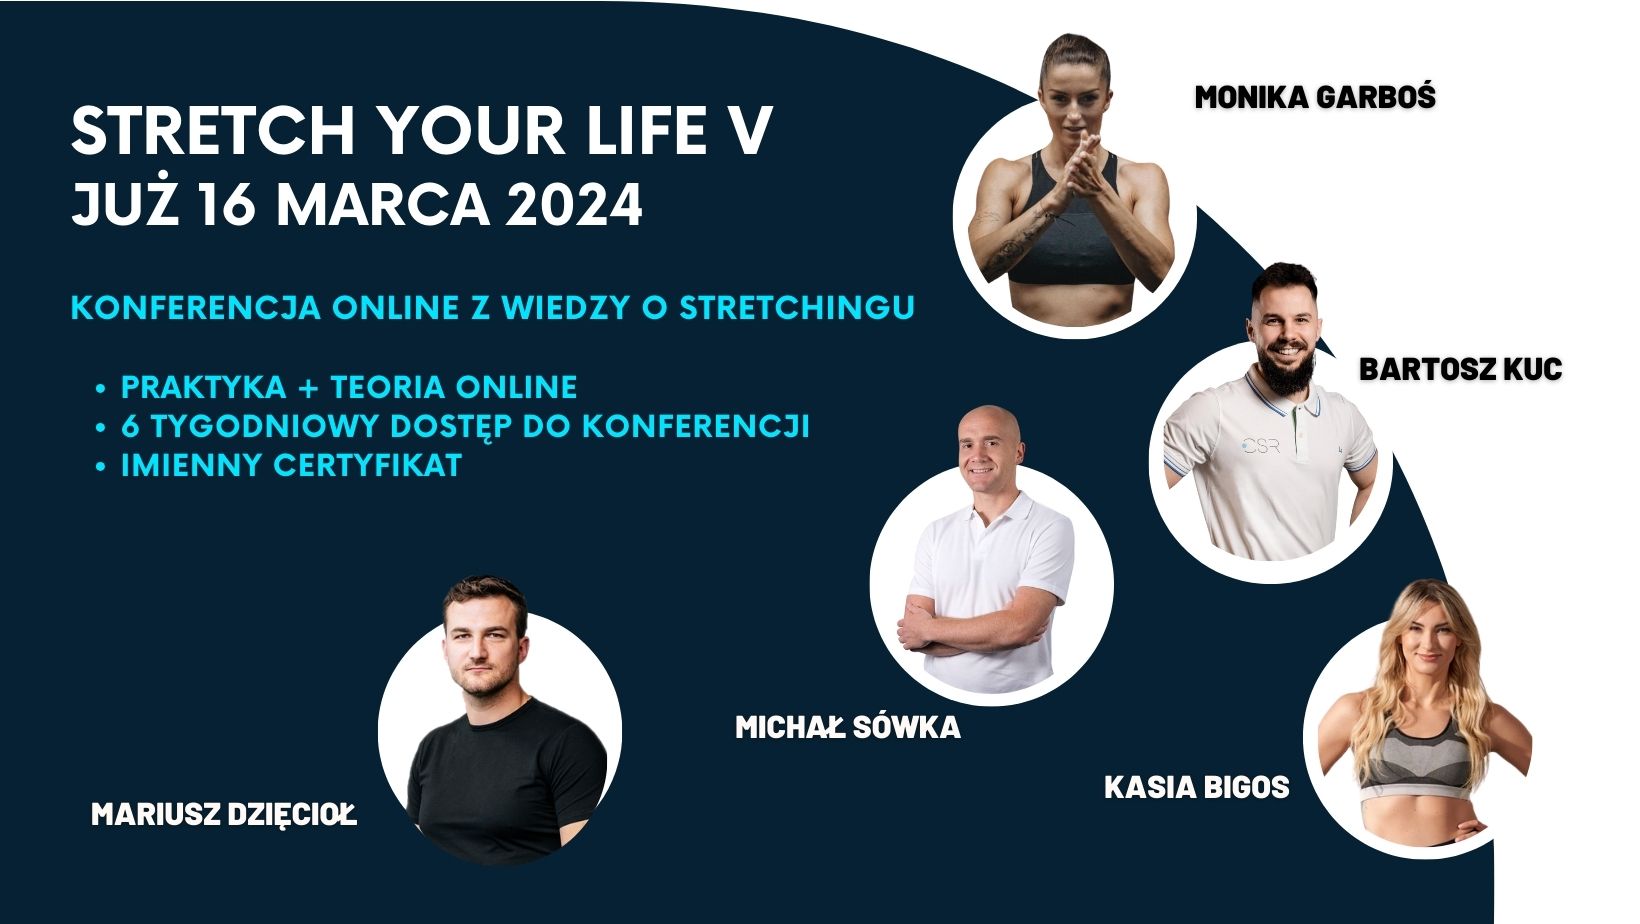 Stretch Your Life edycja V – konferencja z wiedzy o stretchingu